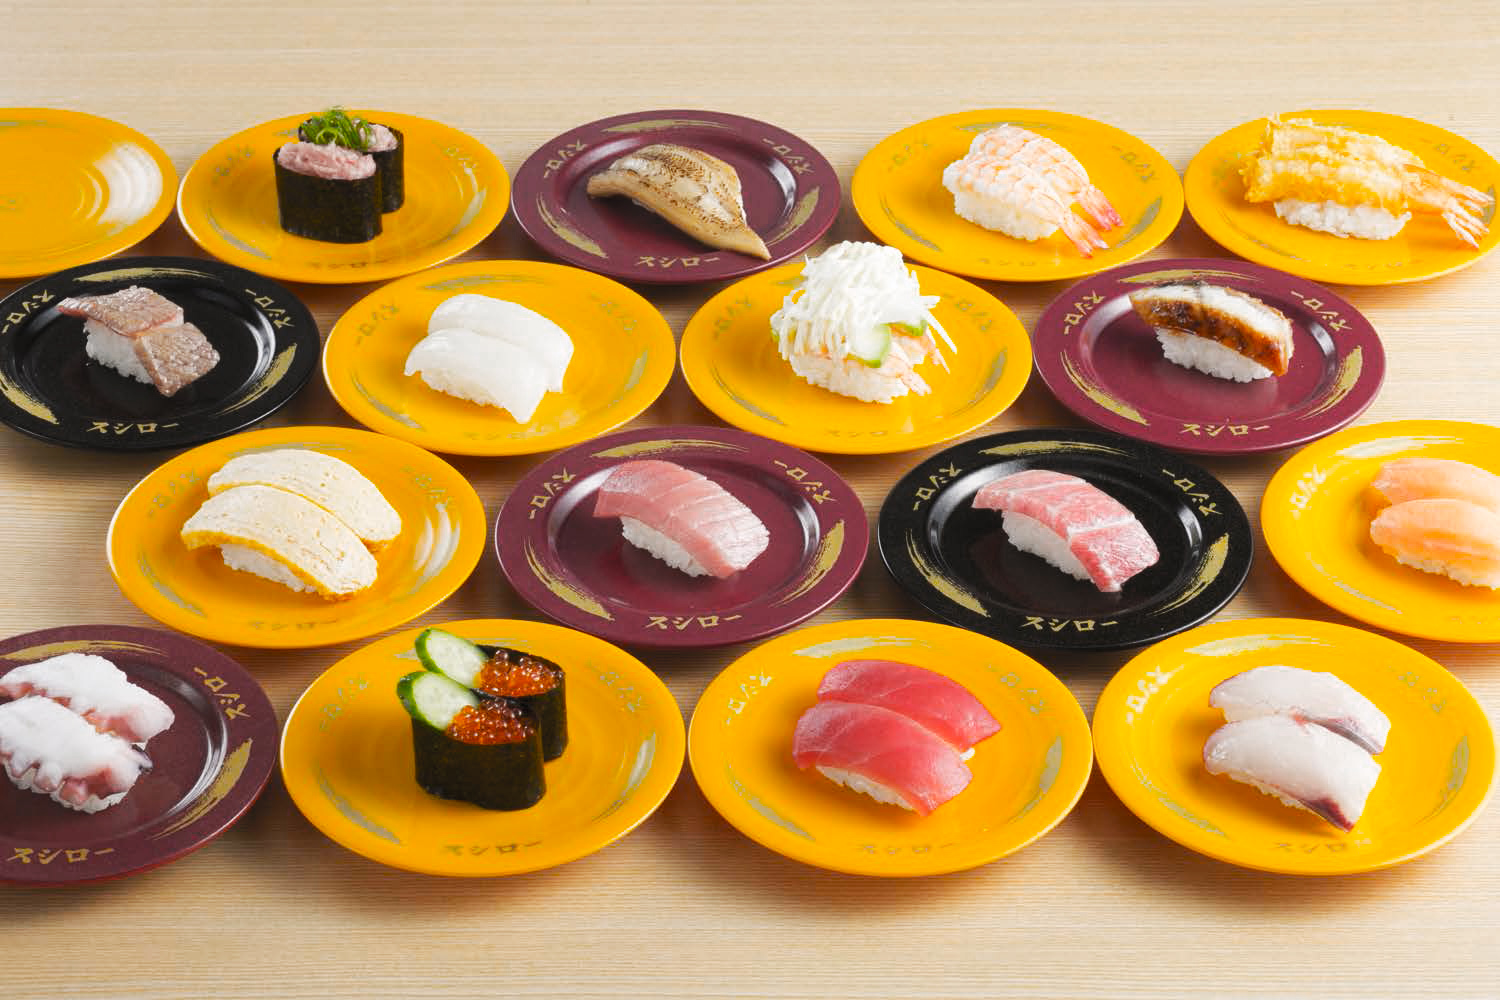 「ジョブチューン」で一流寿司職人がスシローの本当に美味しいネタをジャッジ！意外な結果にネット民騒然